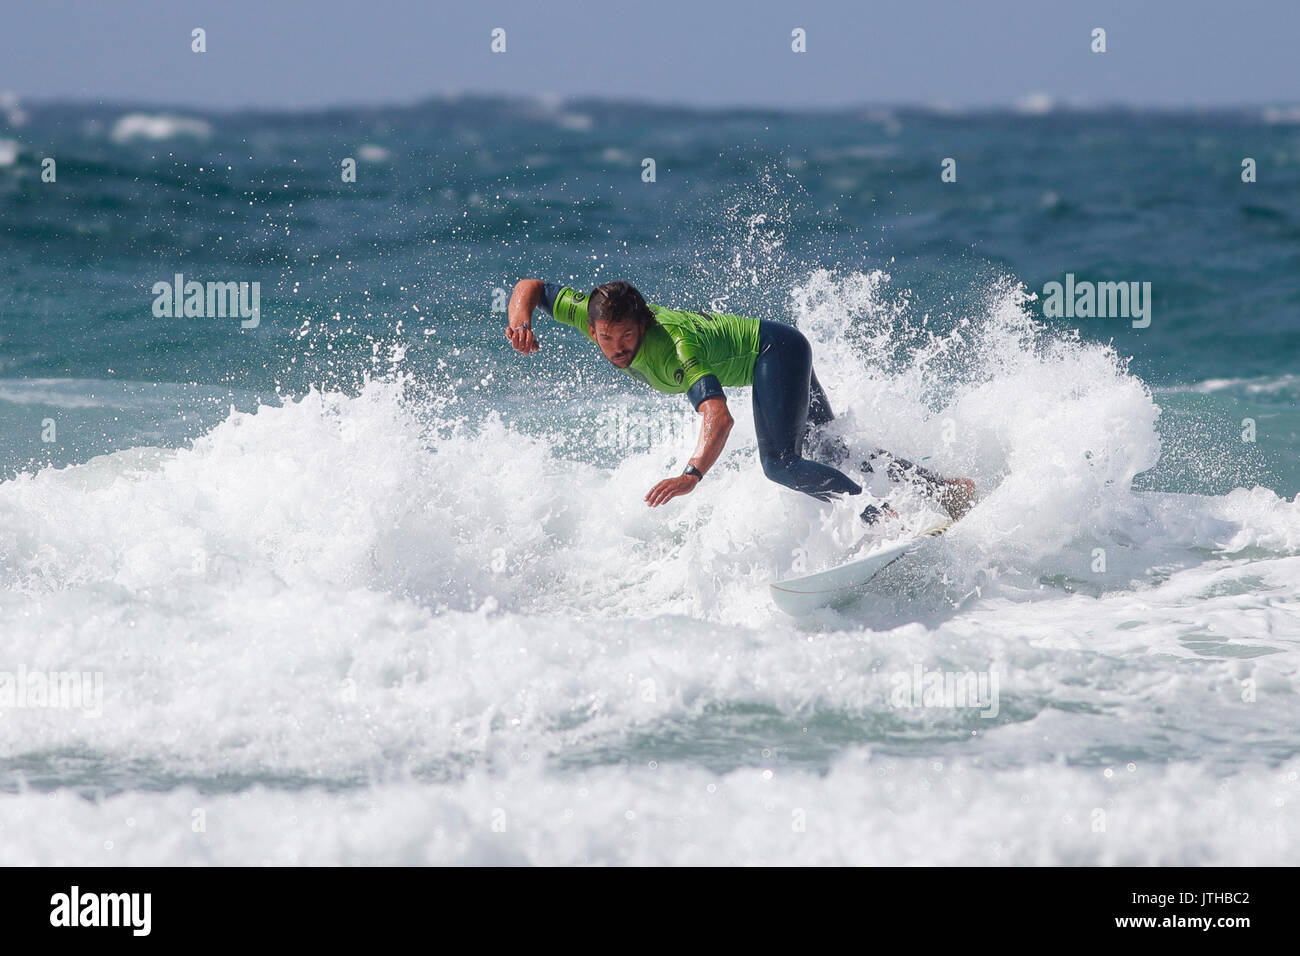 Fistral Beach, Newquay, Cornwall, England. 9 Aug, 2017. Surfer nehmen an Tag 1 Der boardmasters Meisterschaft in der Open Division. Raue See die Bedingungen schwierig. Stockfoto